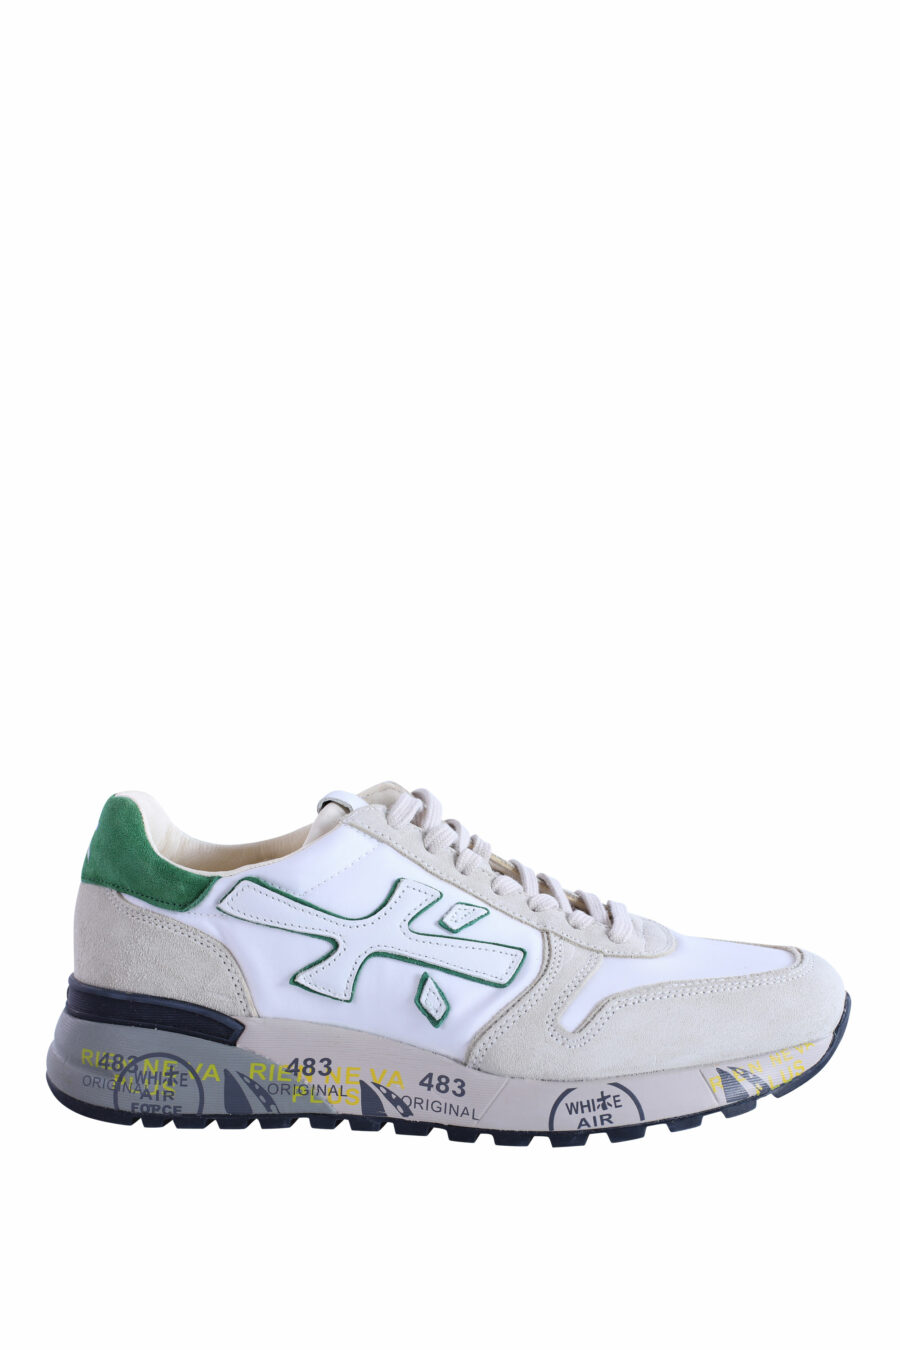 Zapatillas beige con blanco y verde "mick 6167" - IMG 2935